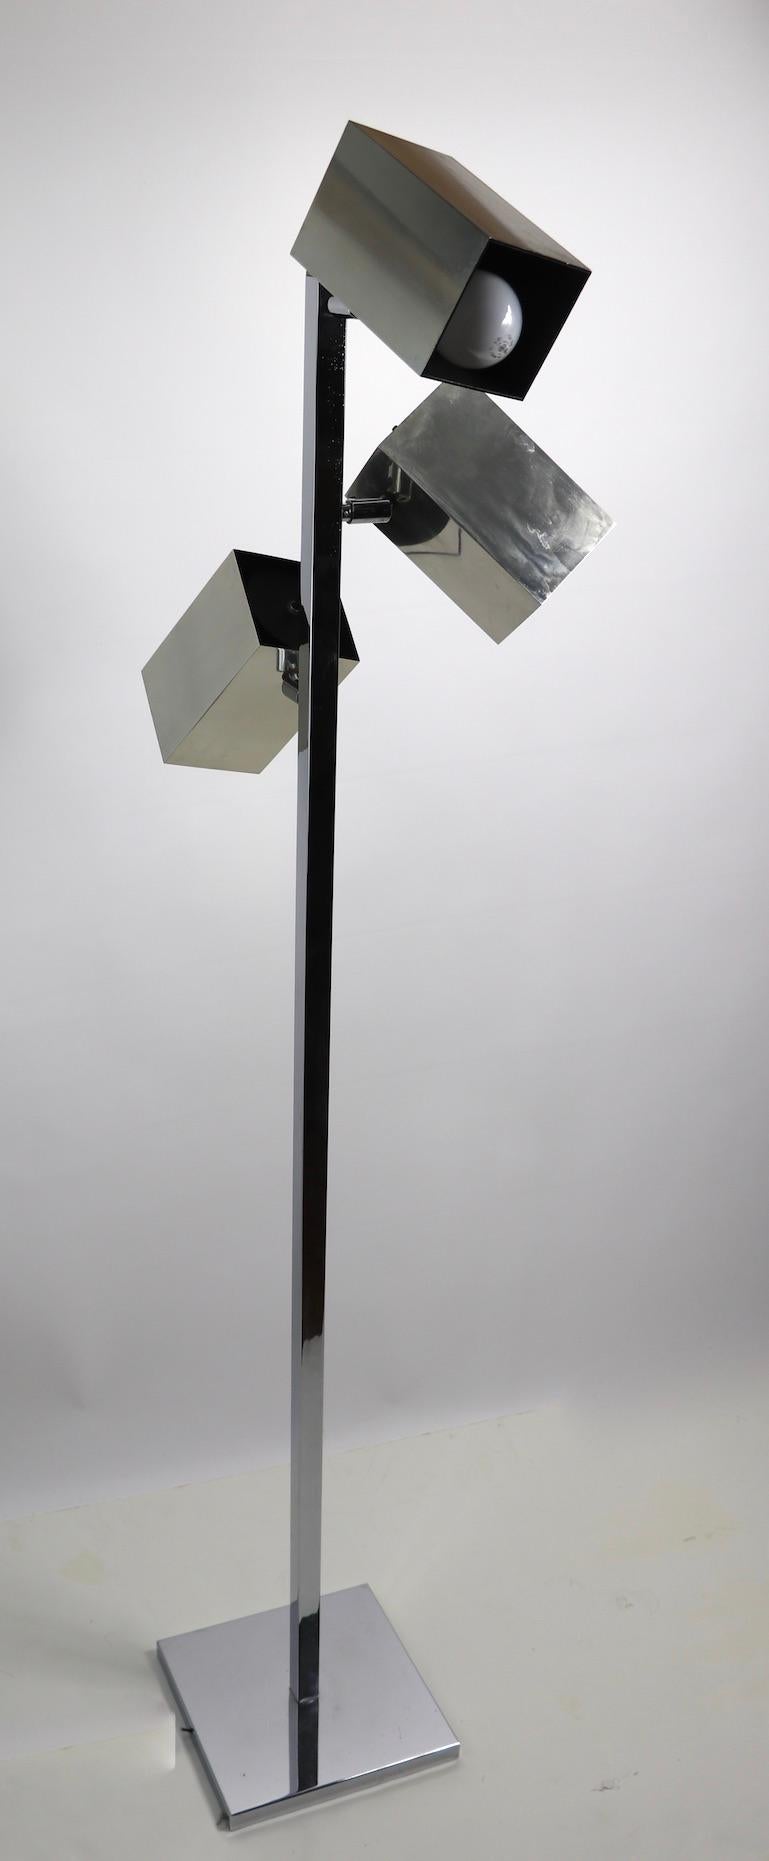 Lampadaire classique Koch et Lowy des années 1970, en chrome et aluminium, à trois lumières. Cet exemple comporte trois abat-jour indépendants en aluminium de forme carrée, chaque abat-jour peut pivoter et s'incliner pour diriger et positionner la